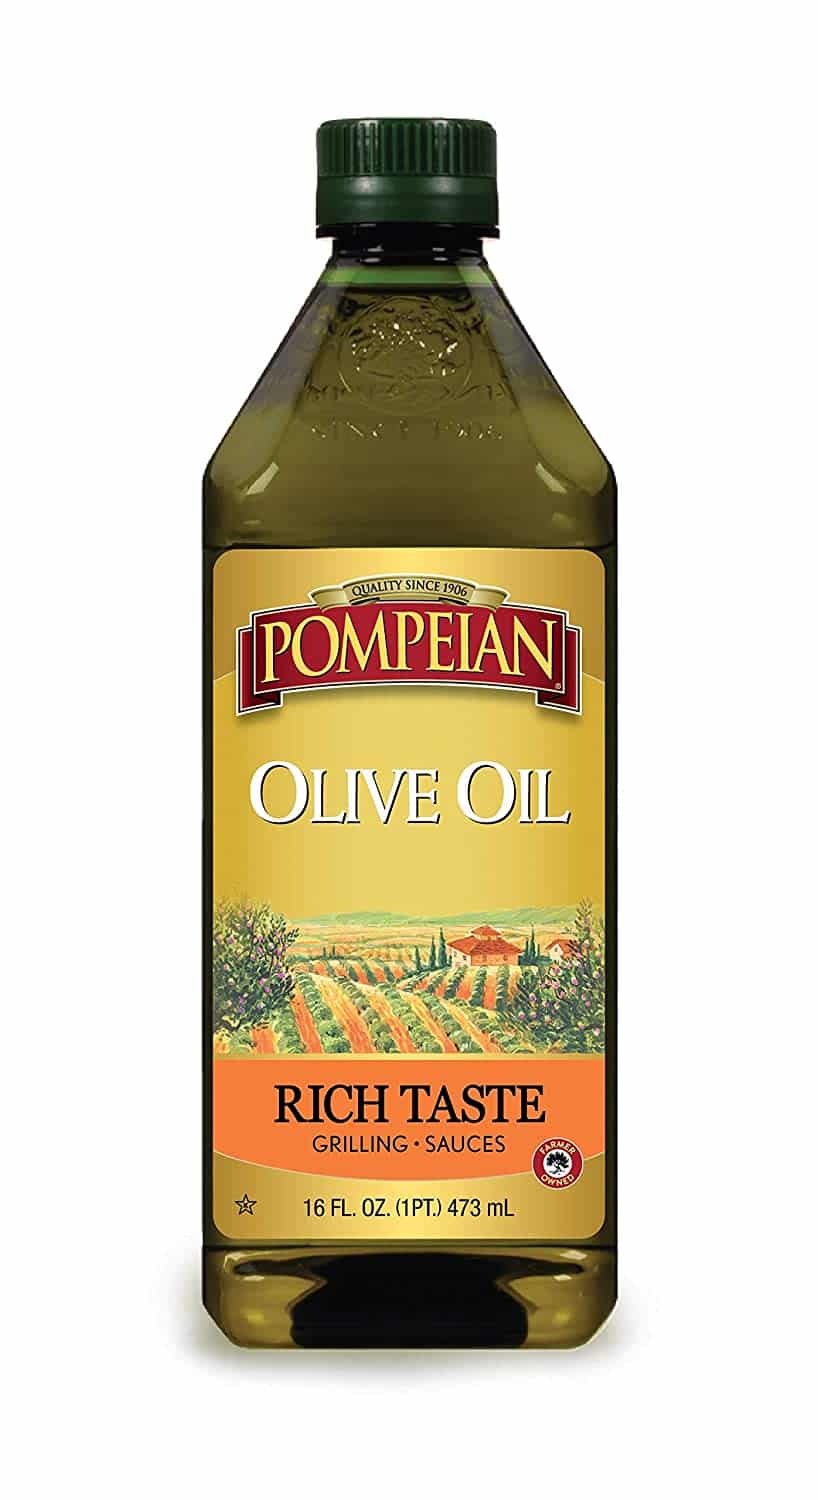 Pompeian Rich Taste Olive Oil, Rich, Full Flavor, Perfect for Grilling & Sauces, Naturally Gluten Free, Non-Allergenic, Non-GMO, 16 FL. OZ.